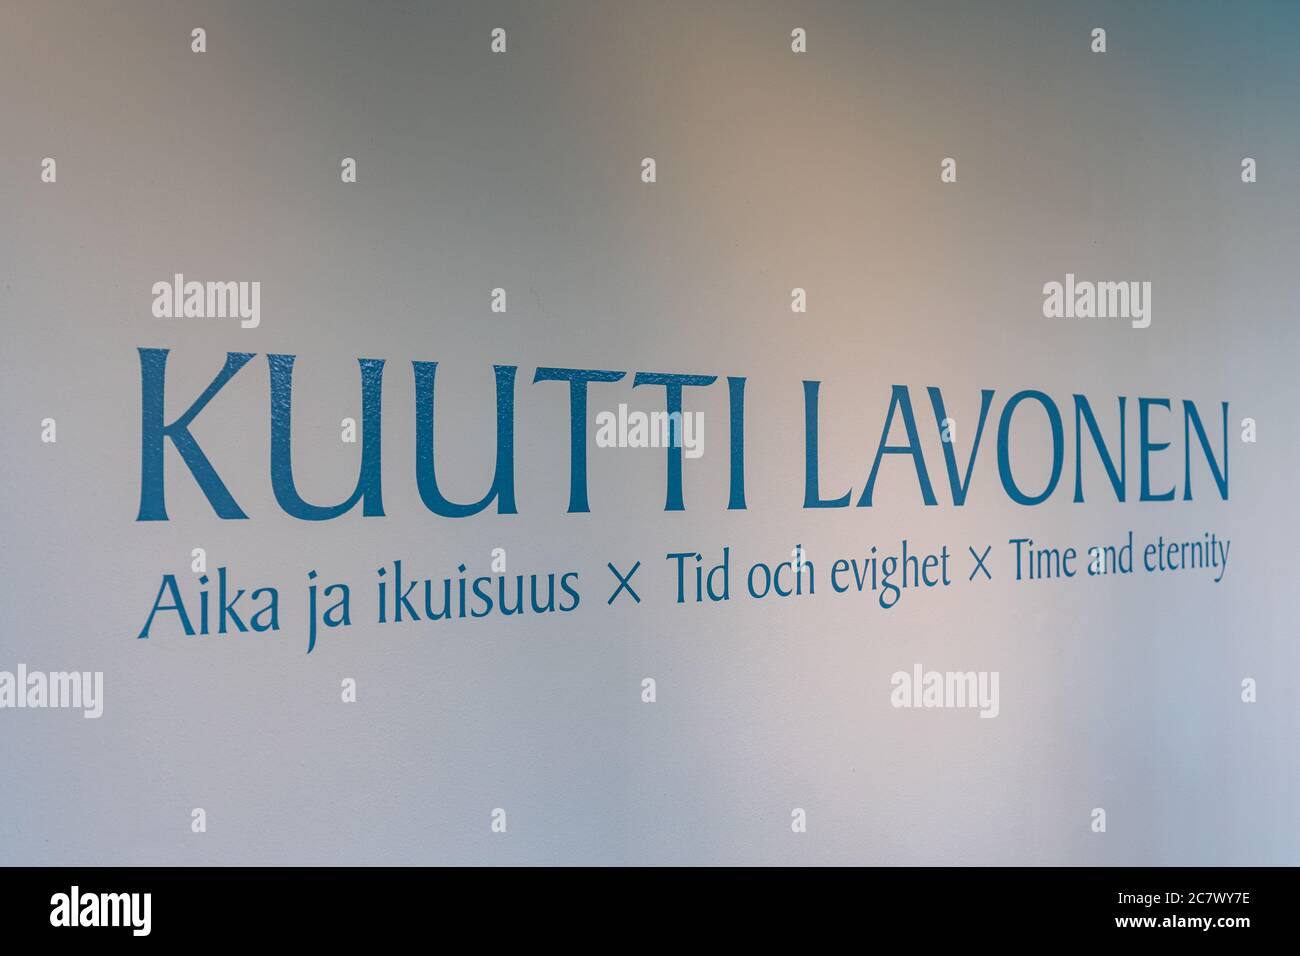 Kuutti Lavonen Aika ja ikuisuus or Time and eternity exhibition in Didrichsen Art Museum in Helsinki, Finland Stock Photo